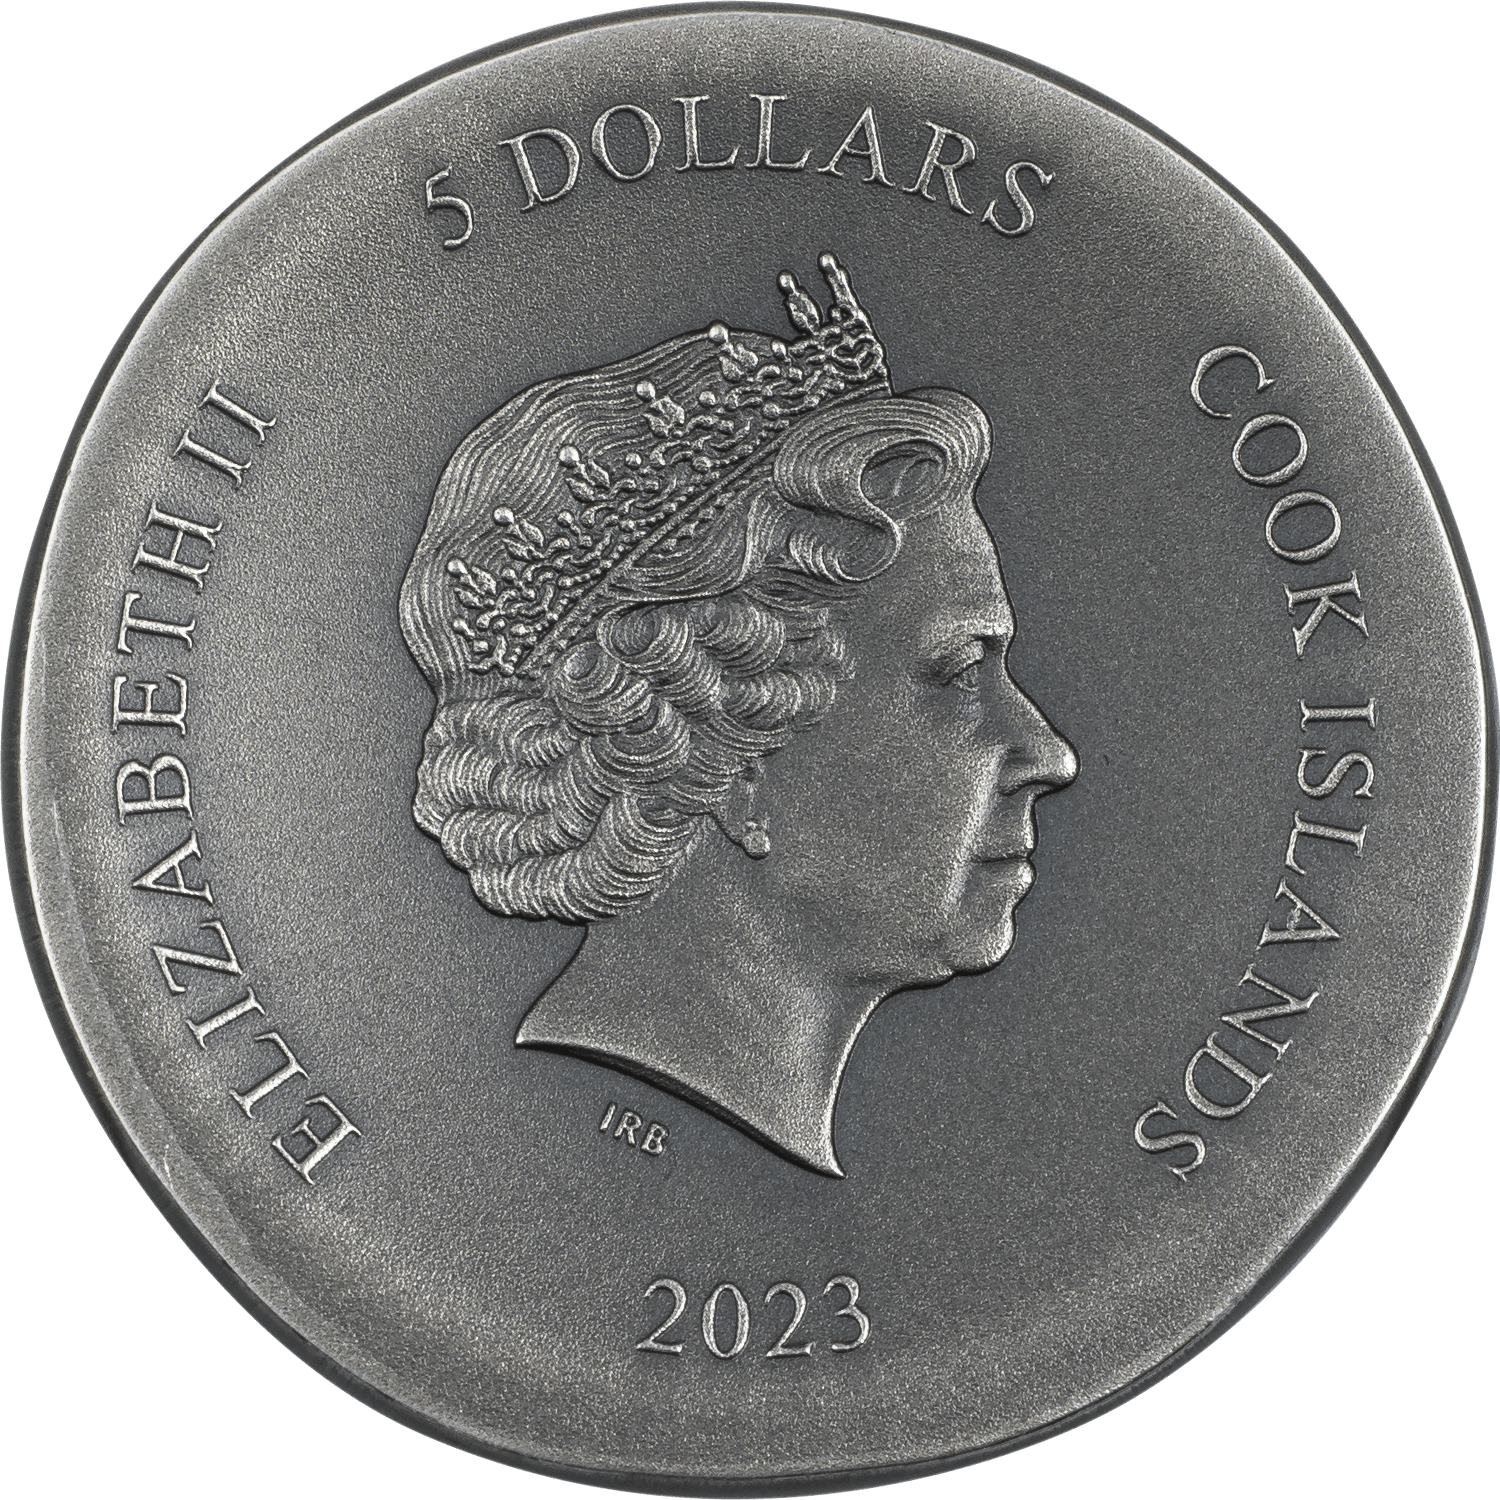 ARETHUSA 1 Oz Silver Coin $5 Cook Islands 2023 - PARTHAVA COIN